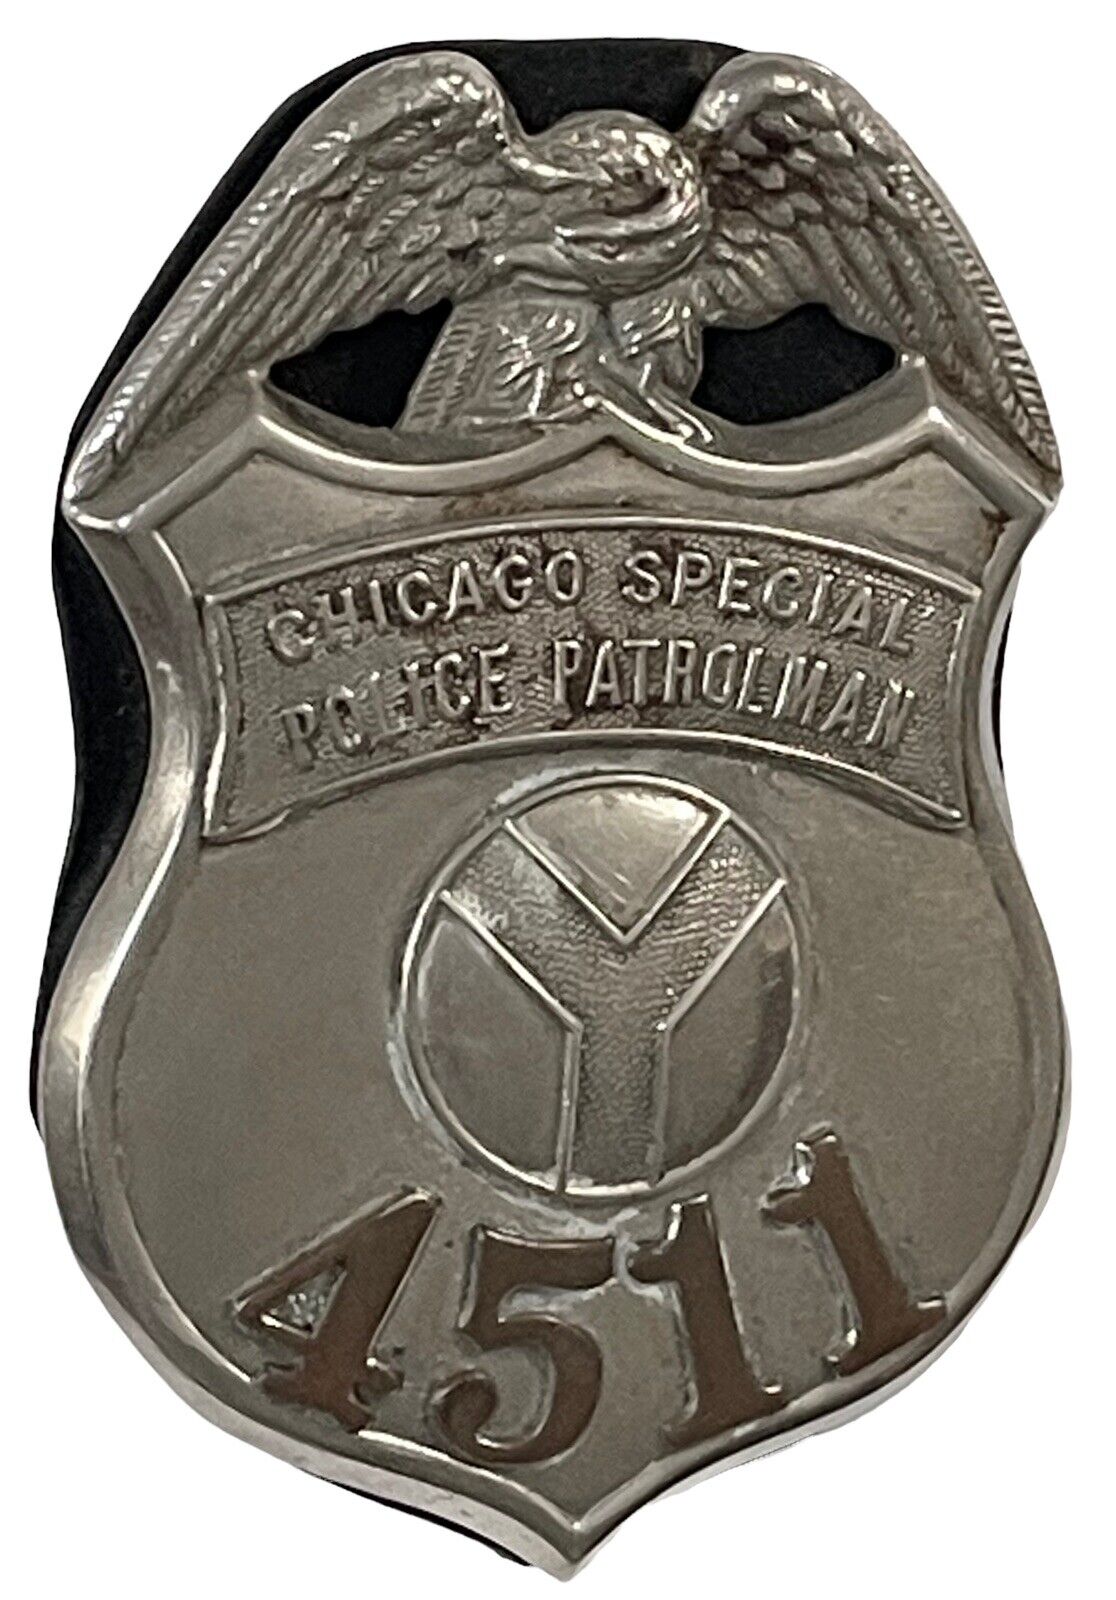 CHICAGO SPECIAL POLICE PATROLMAN Obsolete Badge Eagle, River “Y” C.H. Hanson Co.